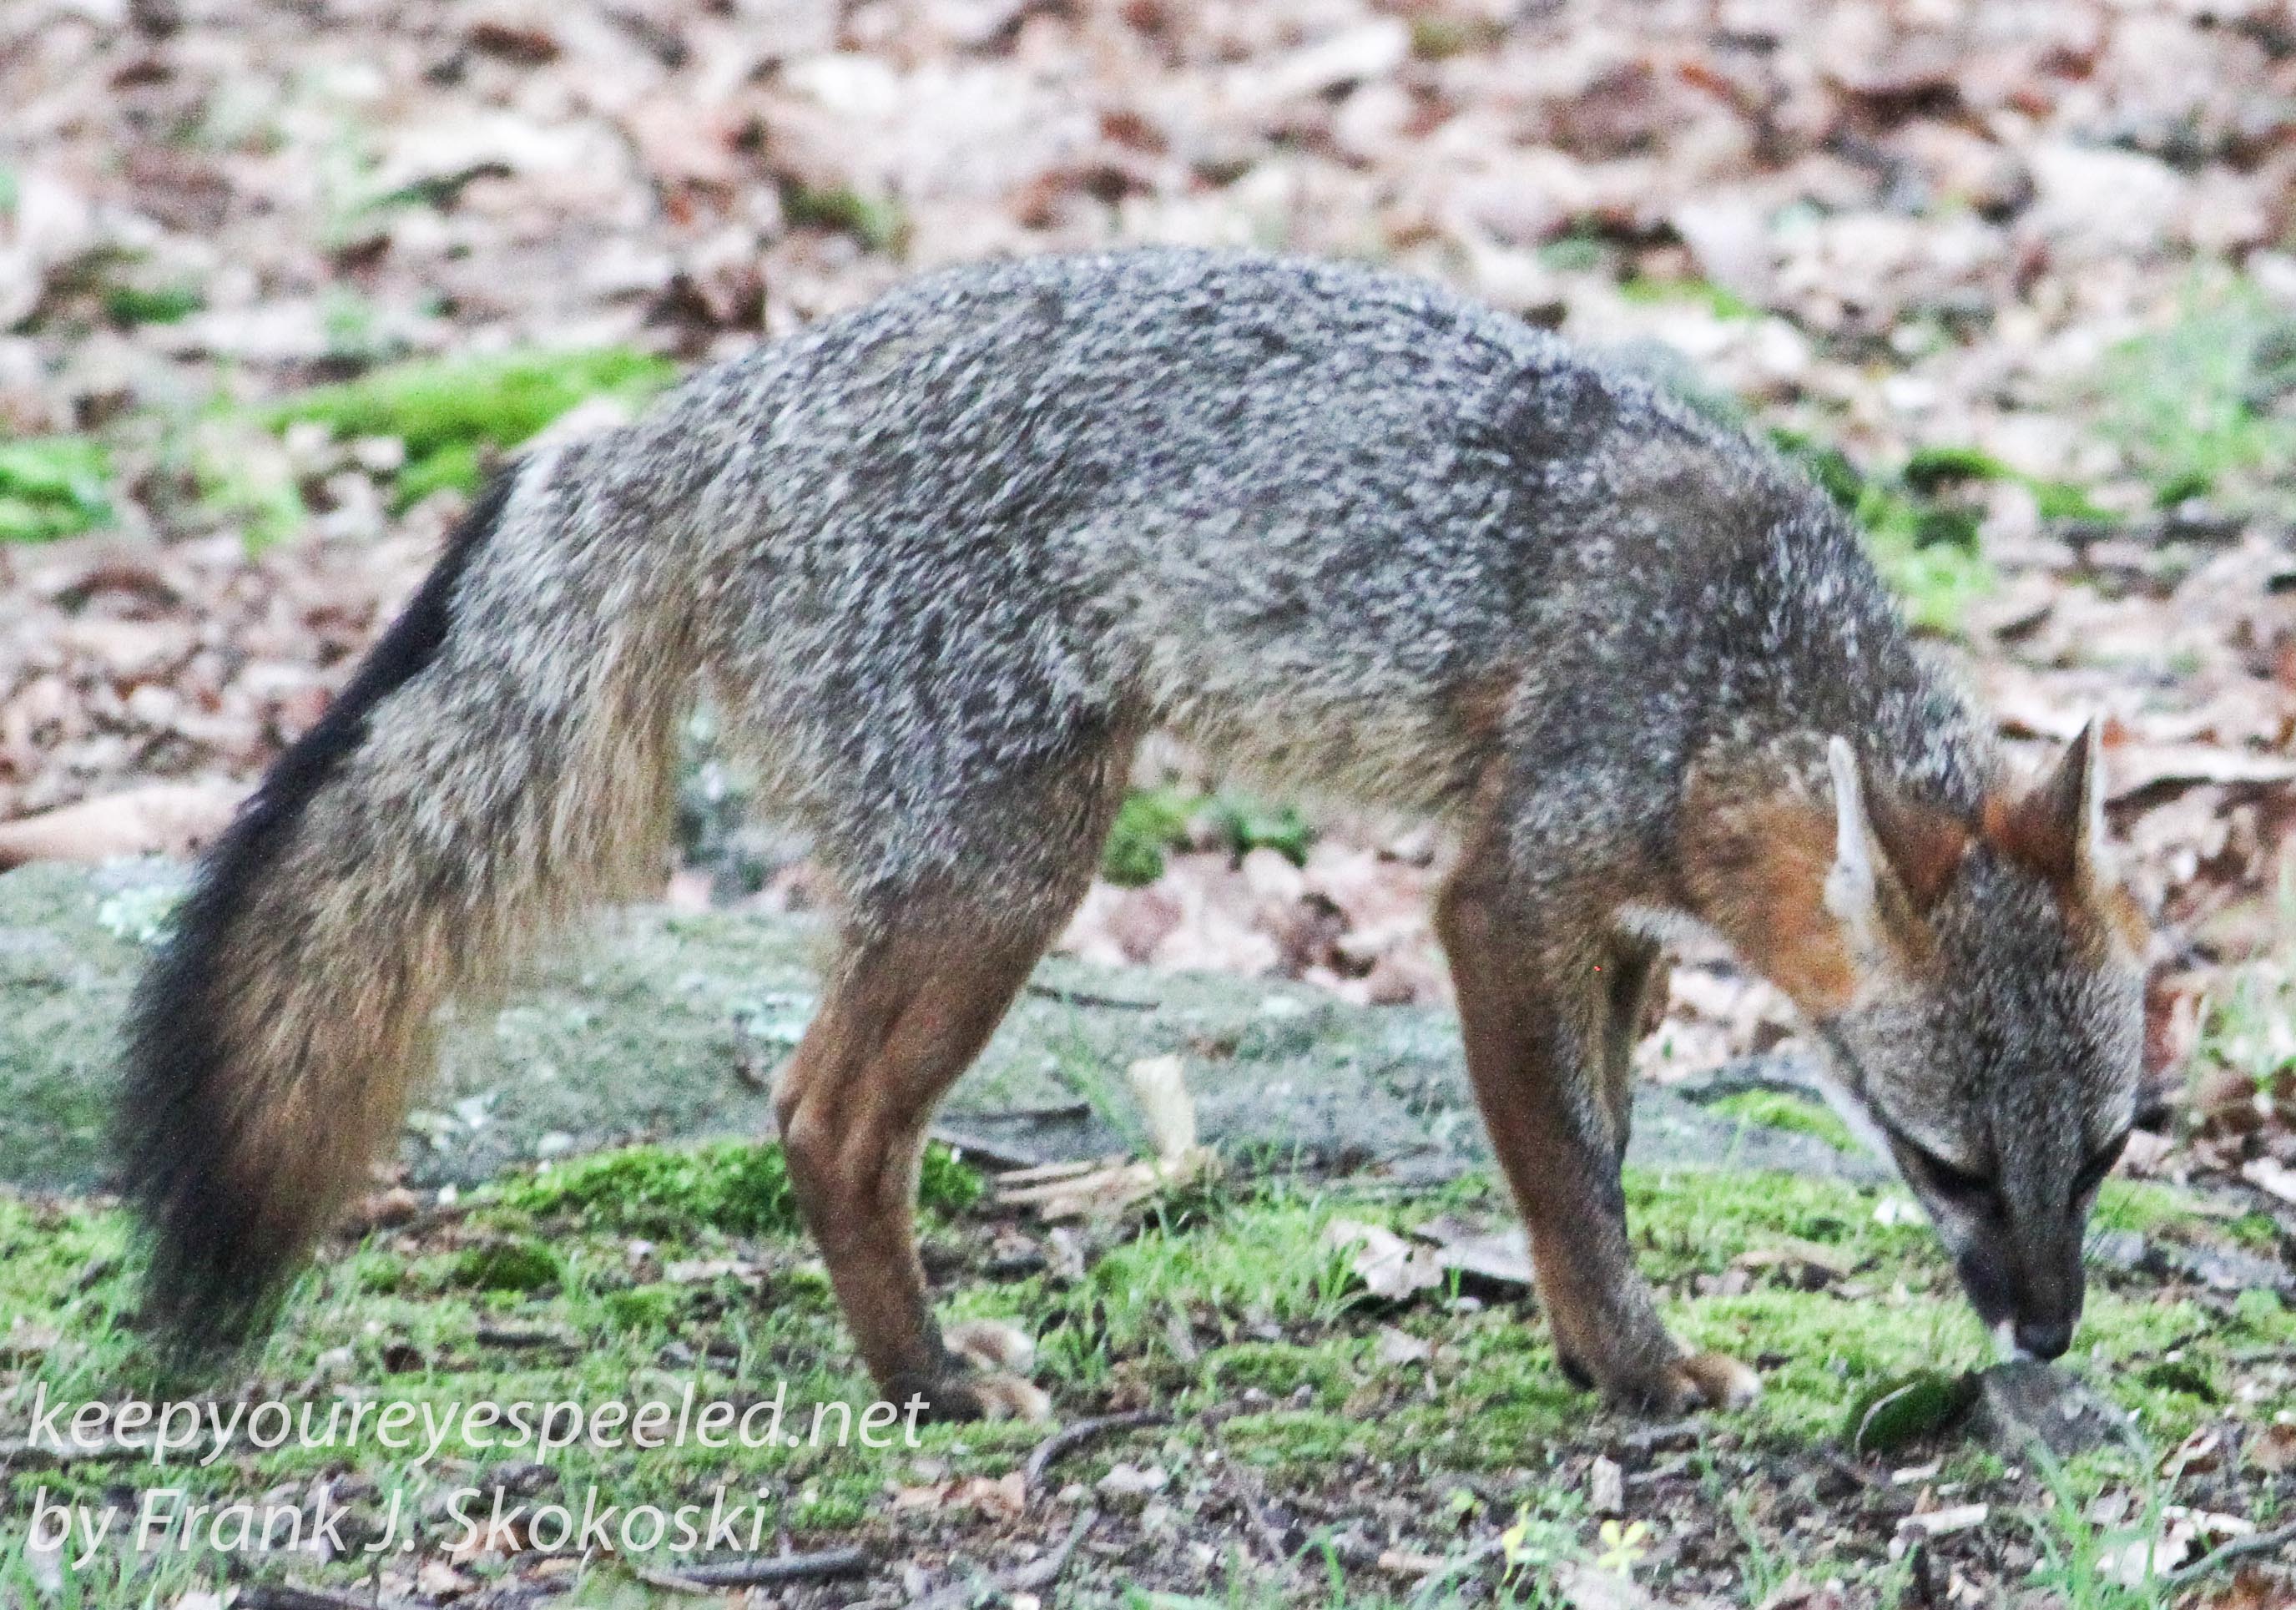 gray fox -021